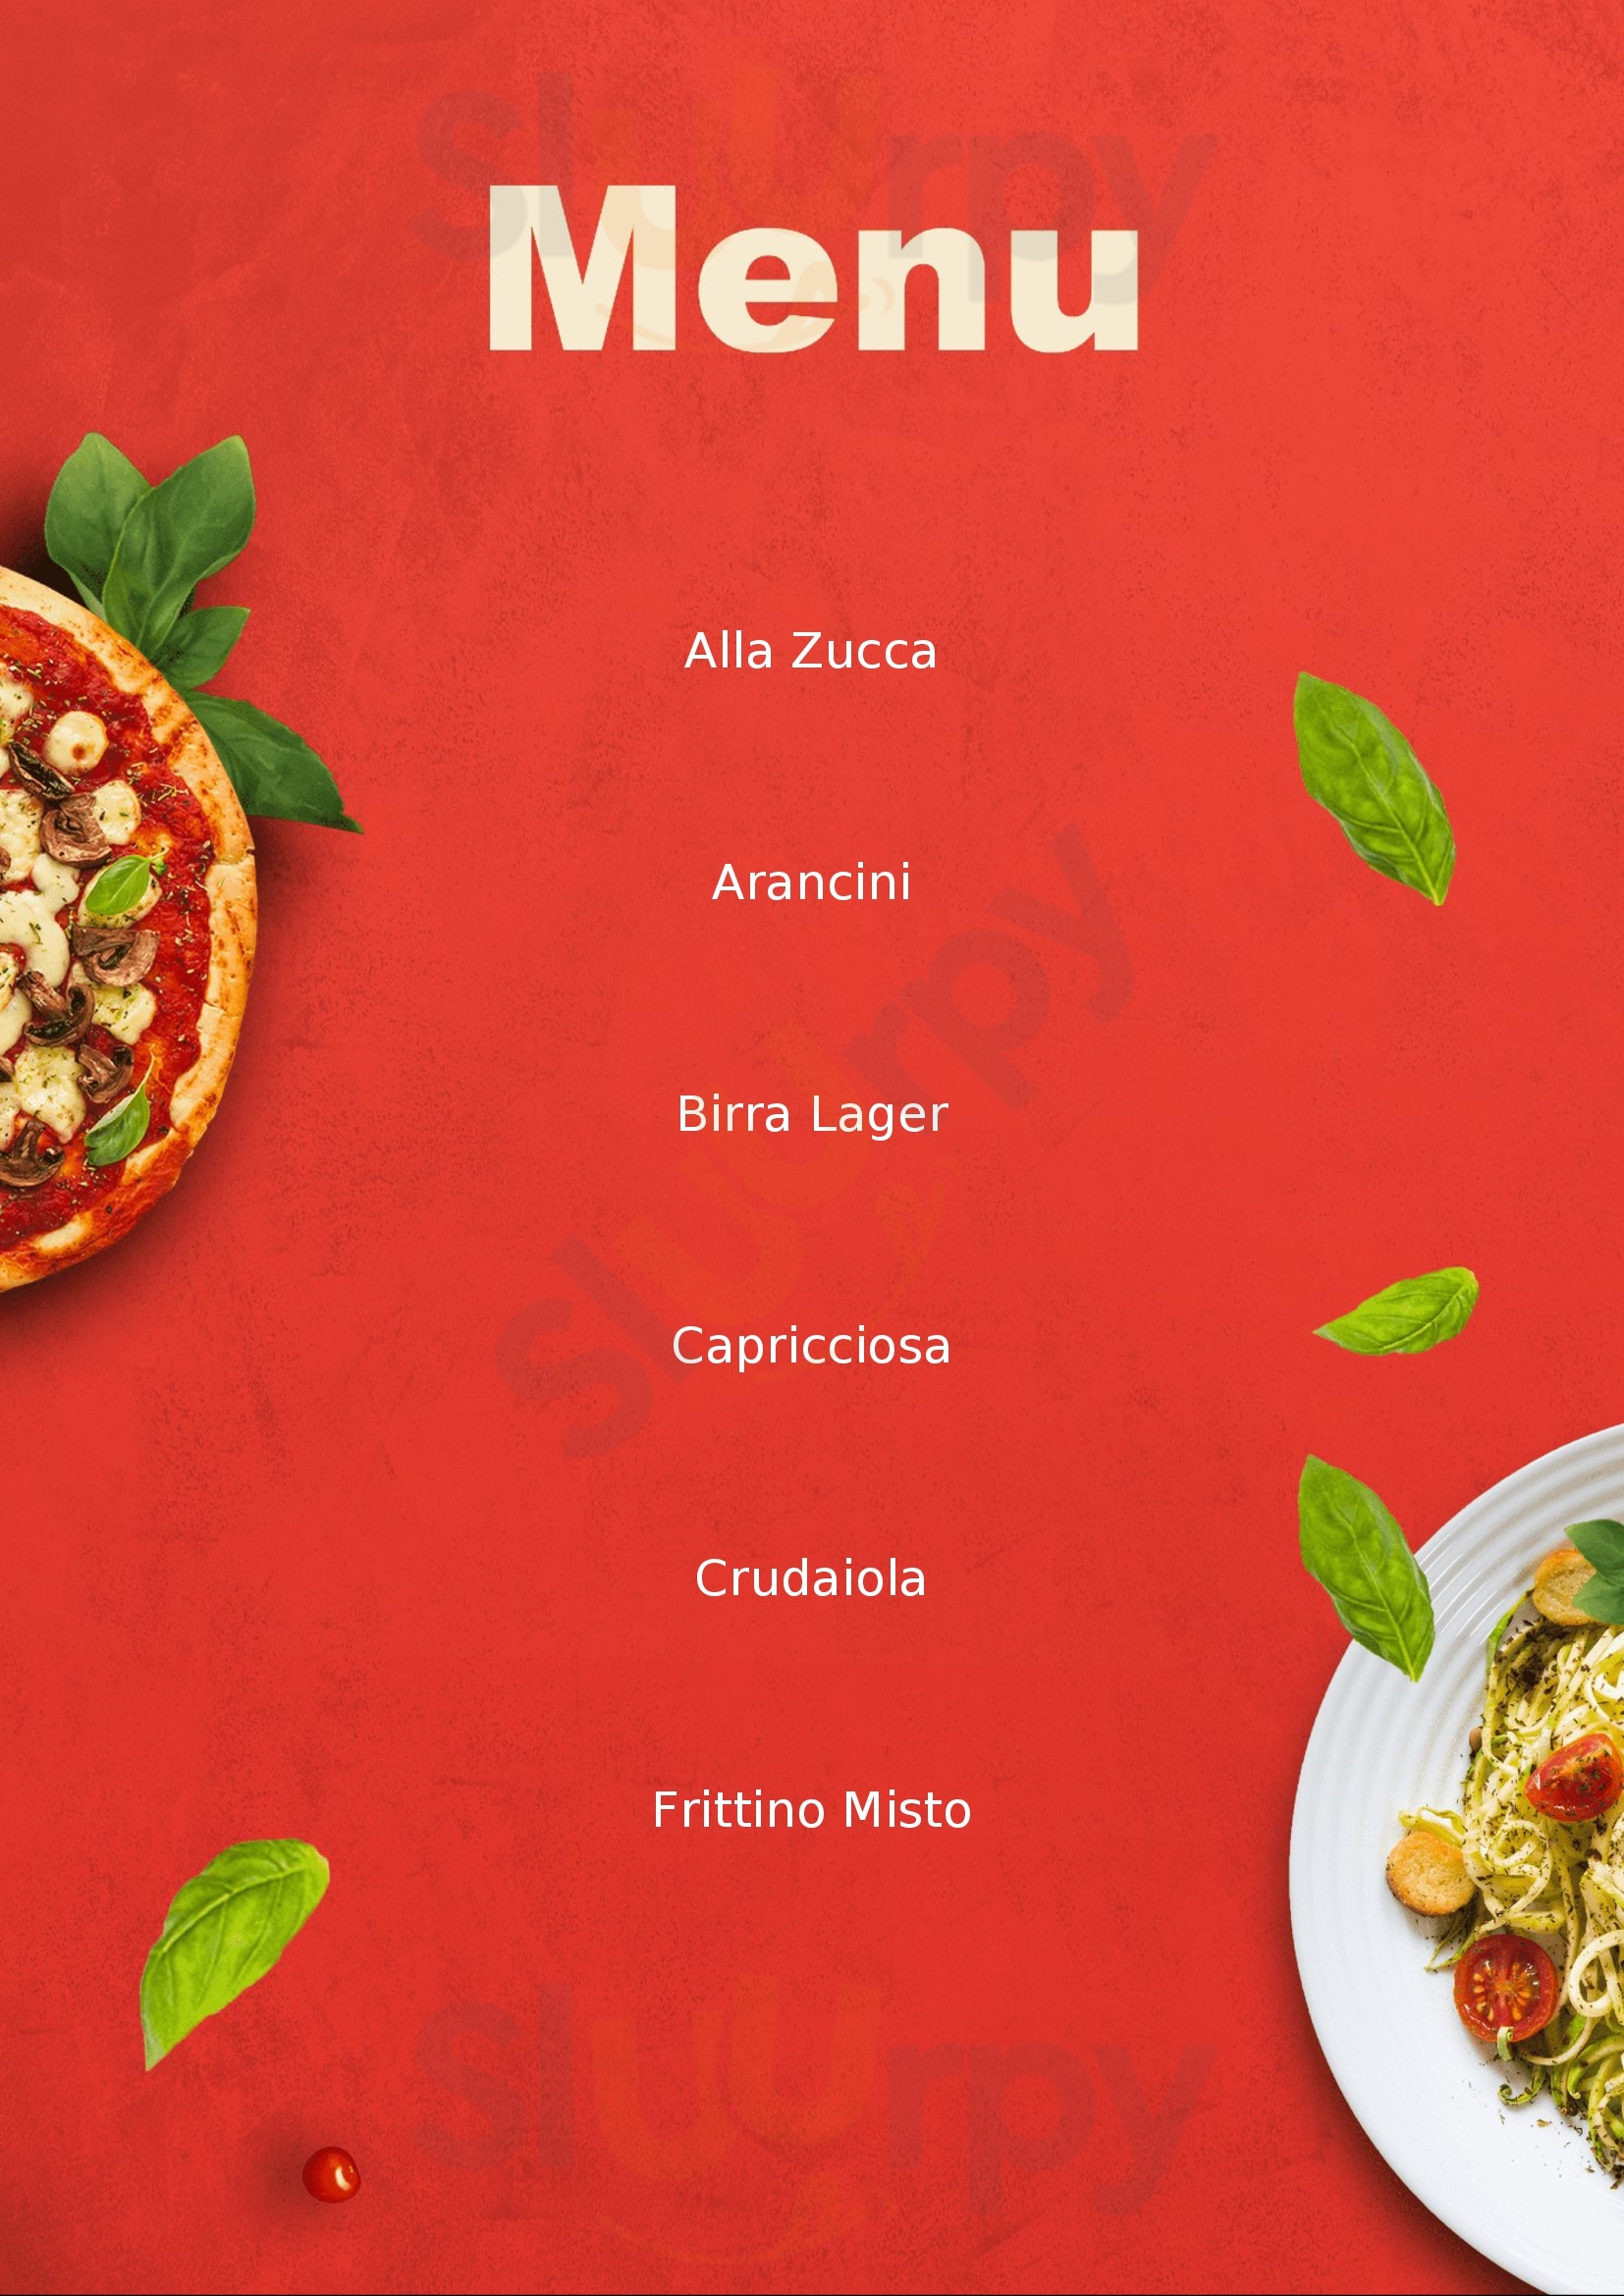 Pizzeria Italia 90 Trepuzzi menù 1 pagina